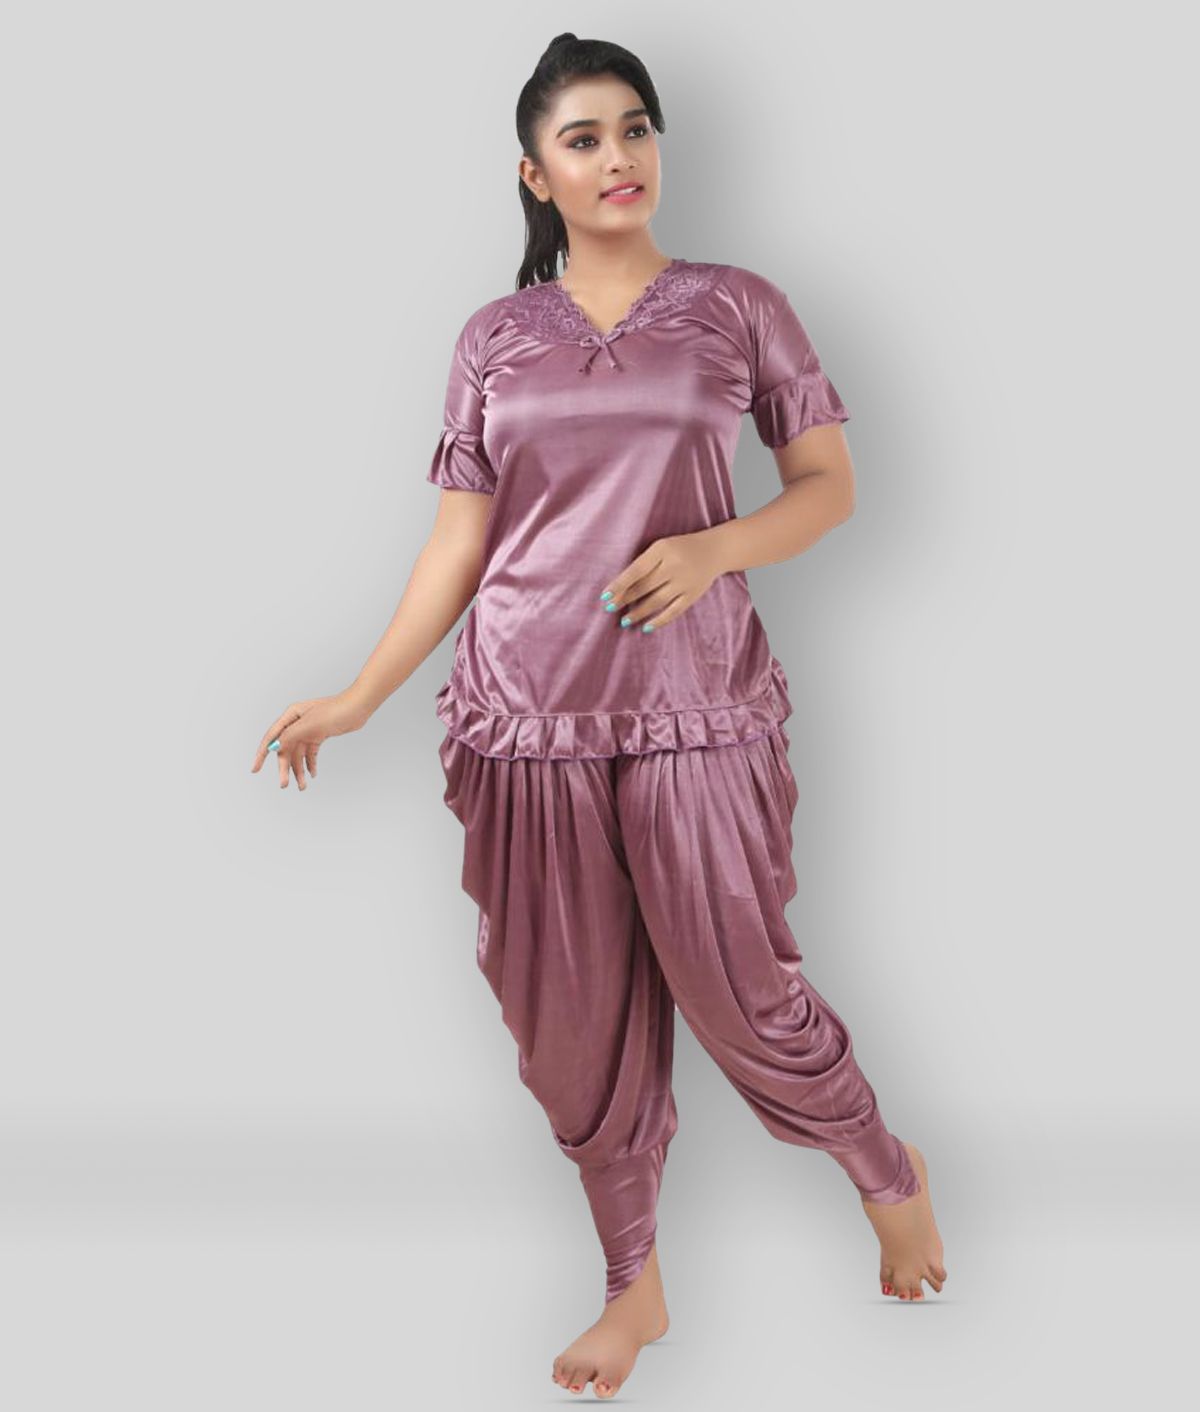     			SWANGIYA - Pink Satin Women's Nightwear Nightsuit Sets ( Pack of 1 )